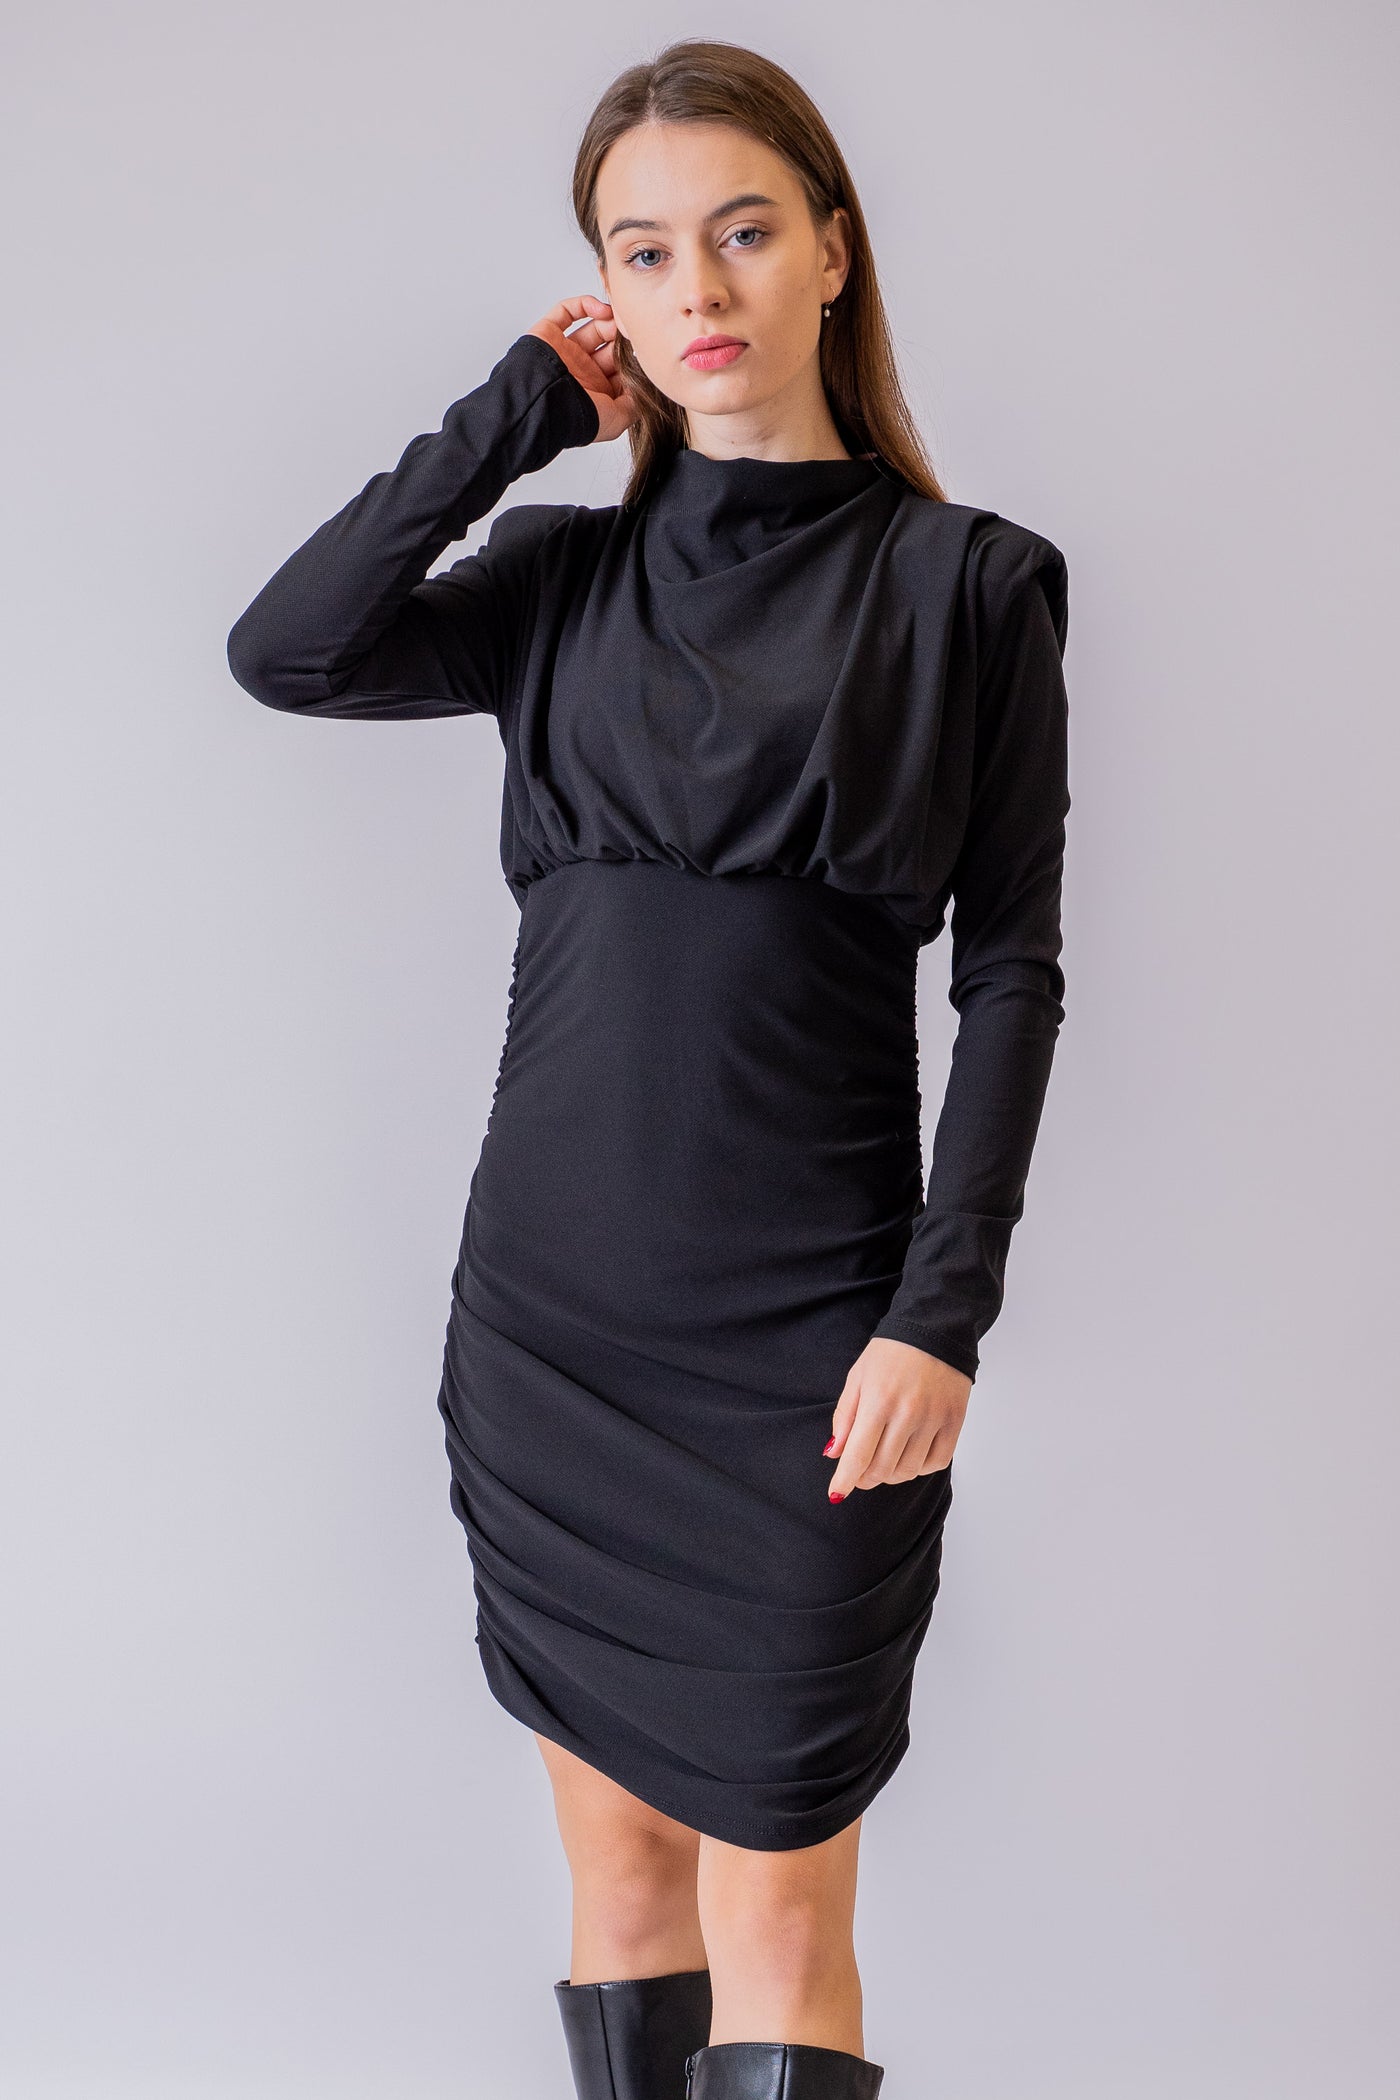 Čierne šaty Karra